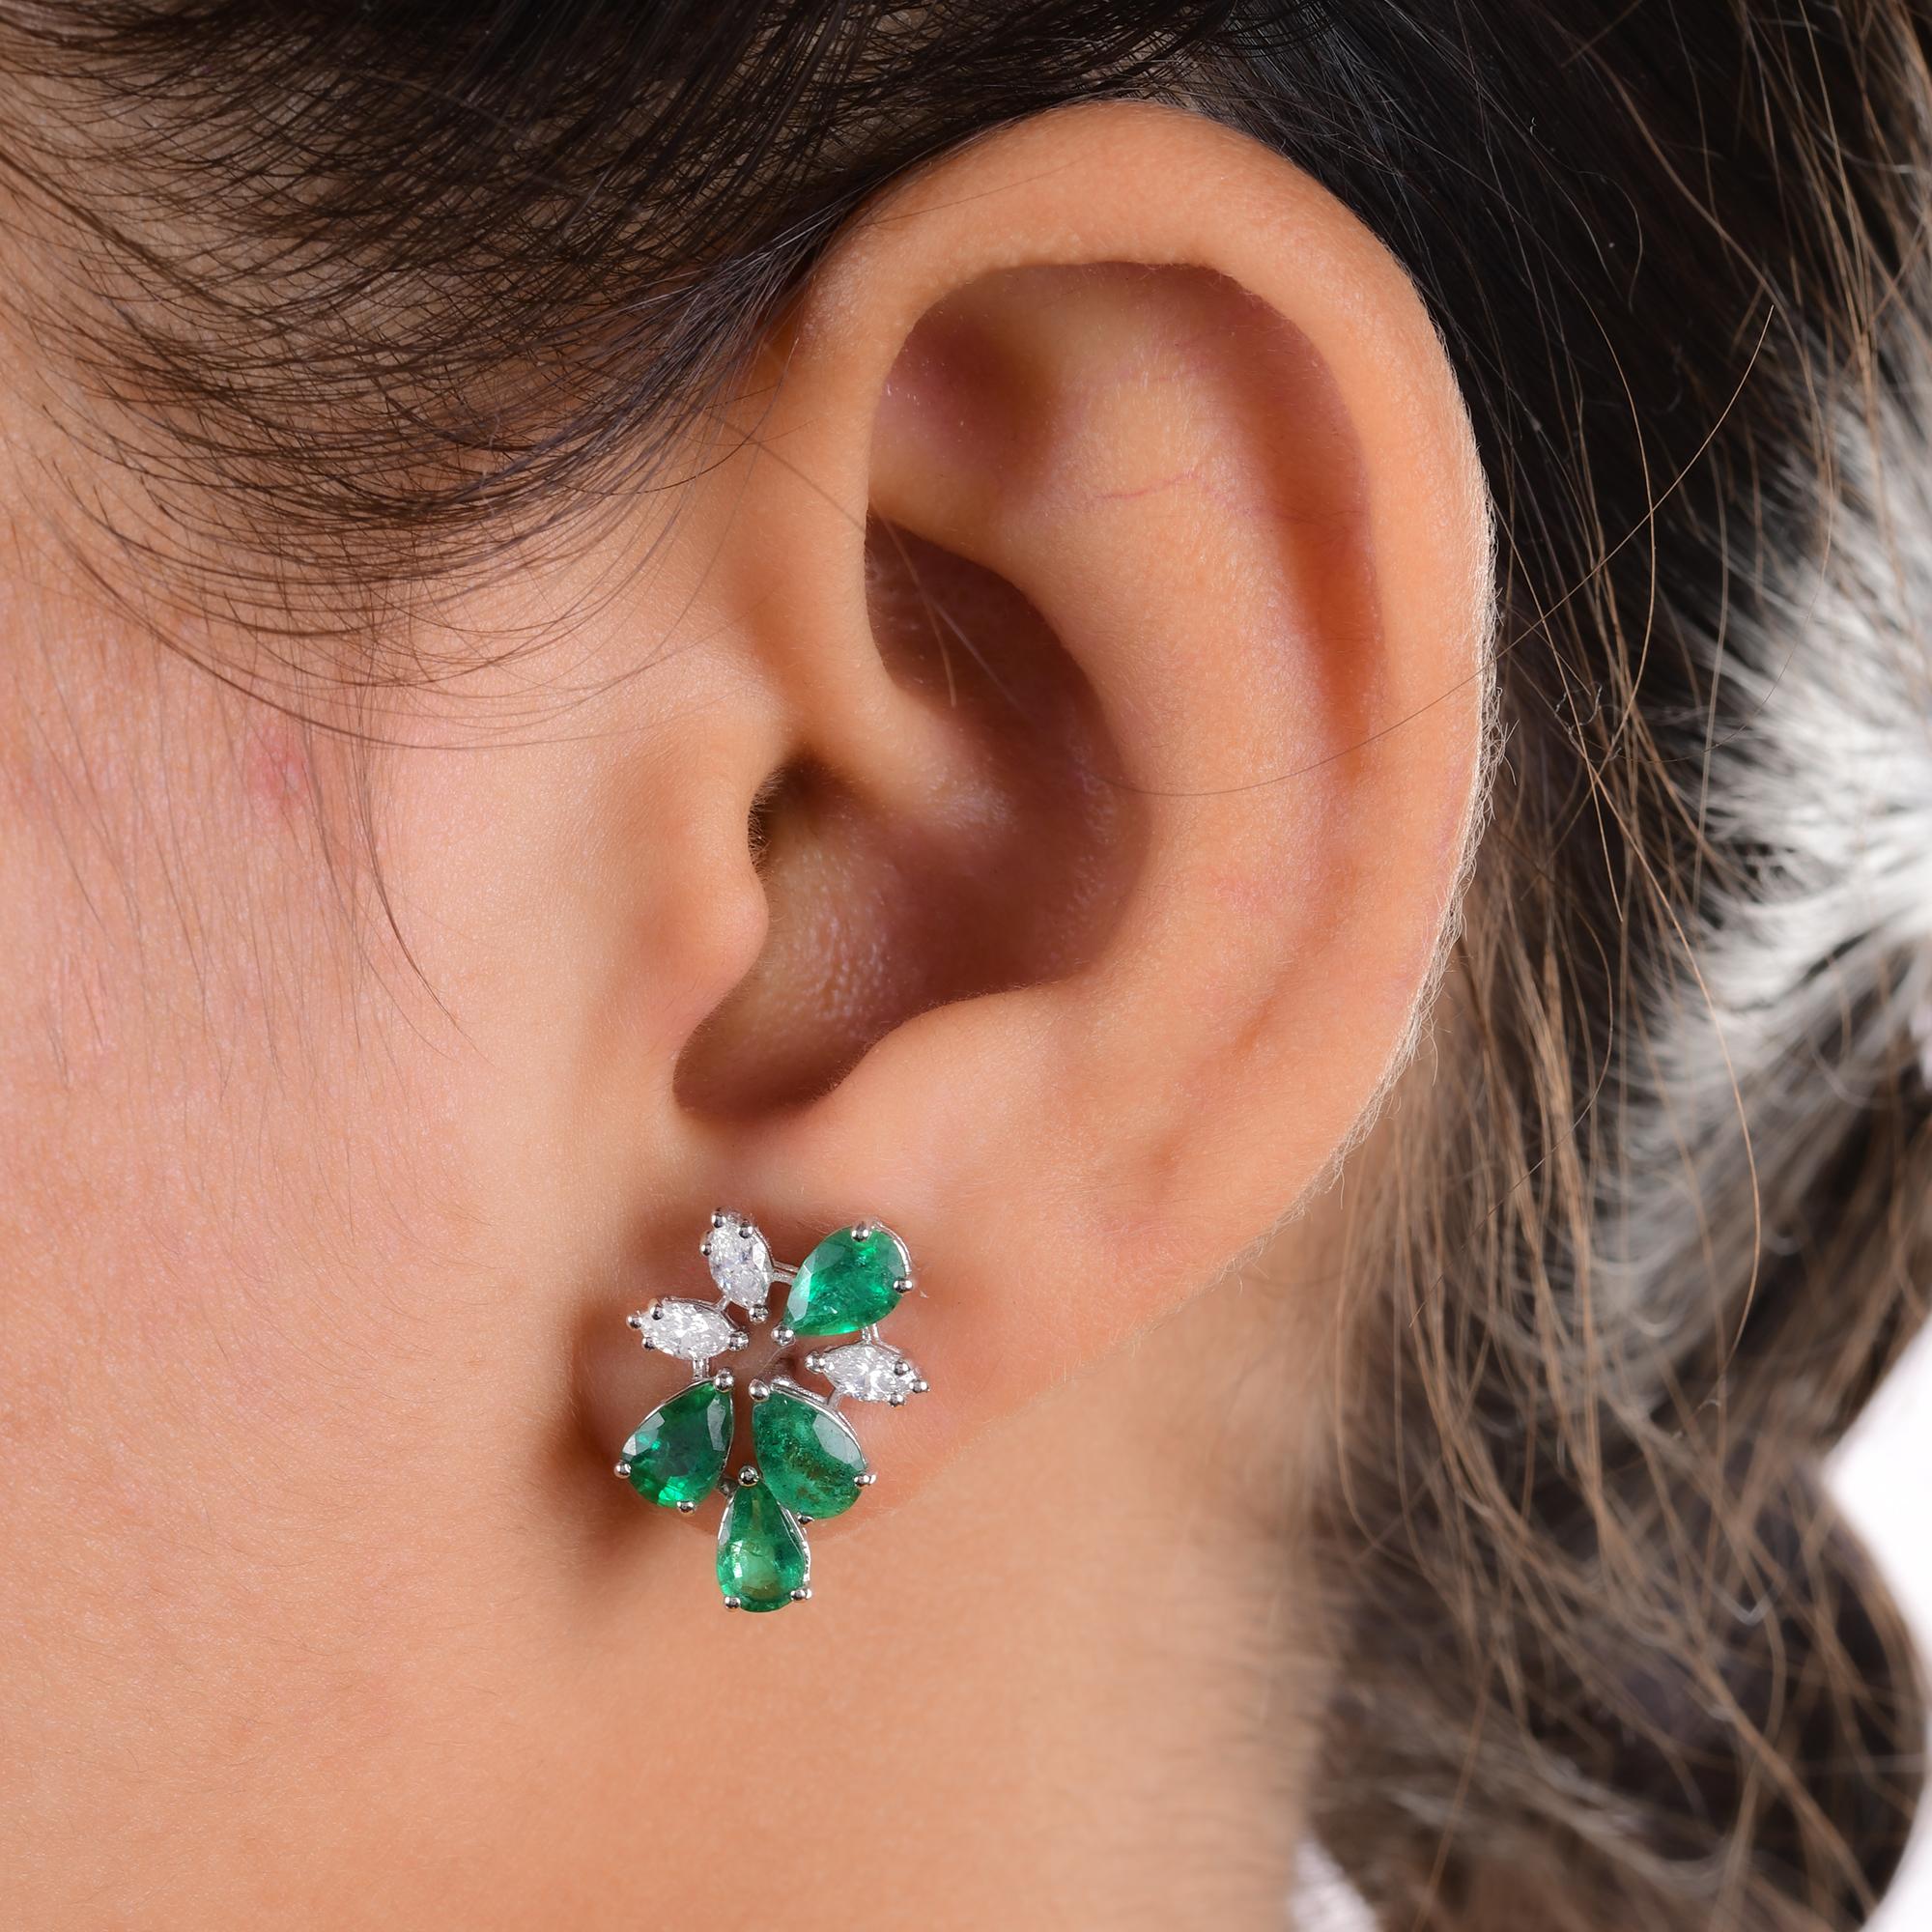 Pear Cut Pear Zambian Emerald Gemstone Designer Fine Stud Earrings Diamond 14k White Gold For Sale